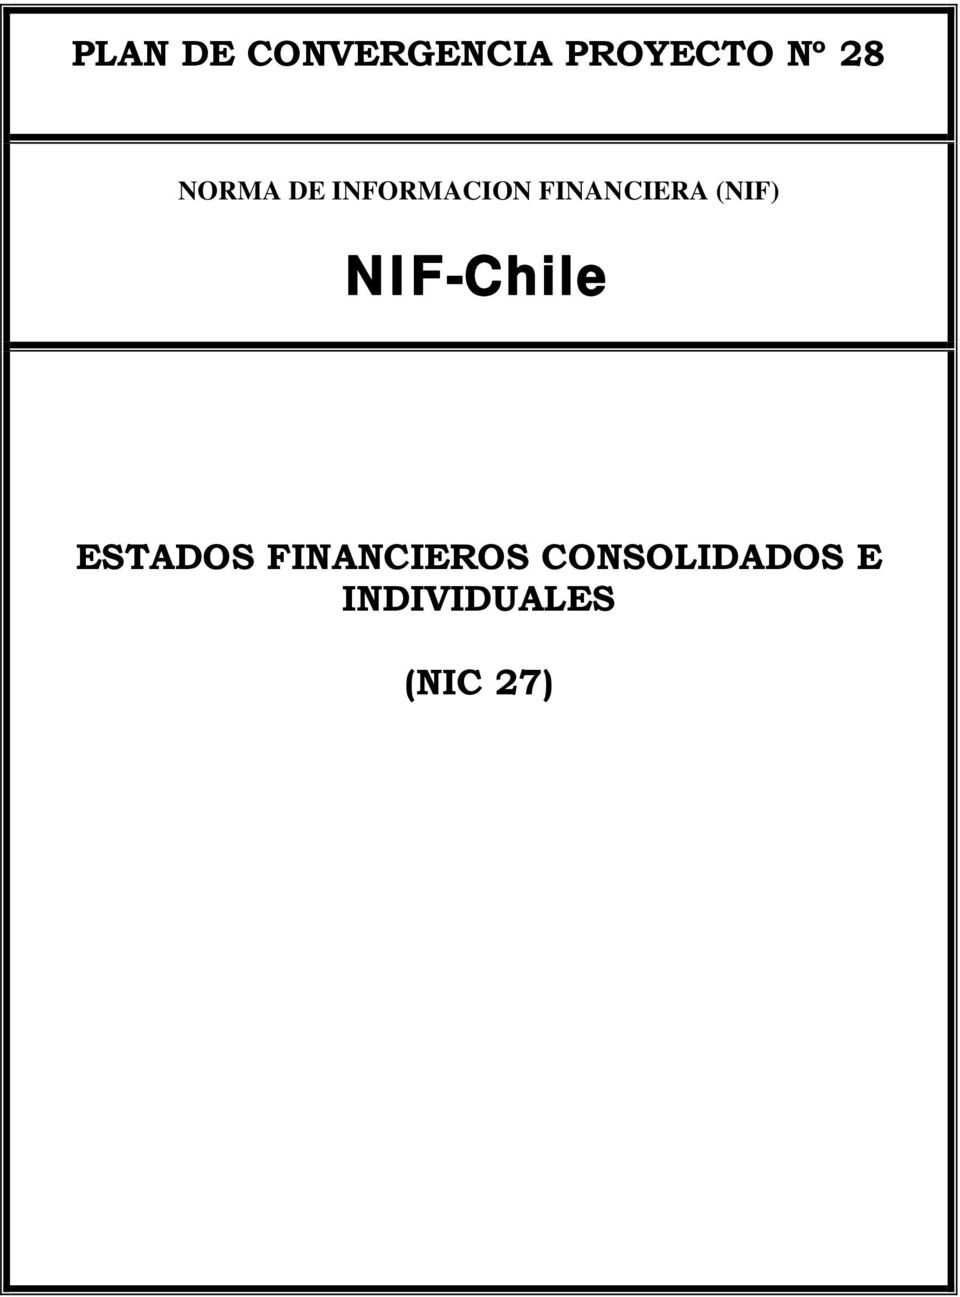 (NIF) NIF-Chile ESTADOS